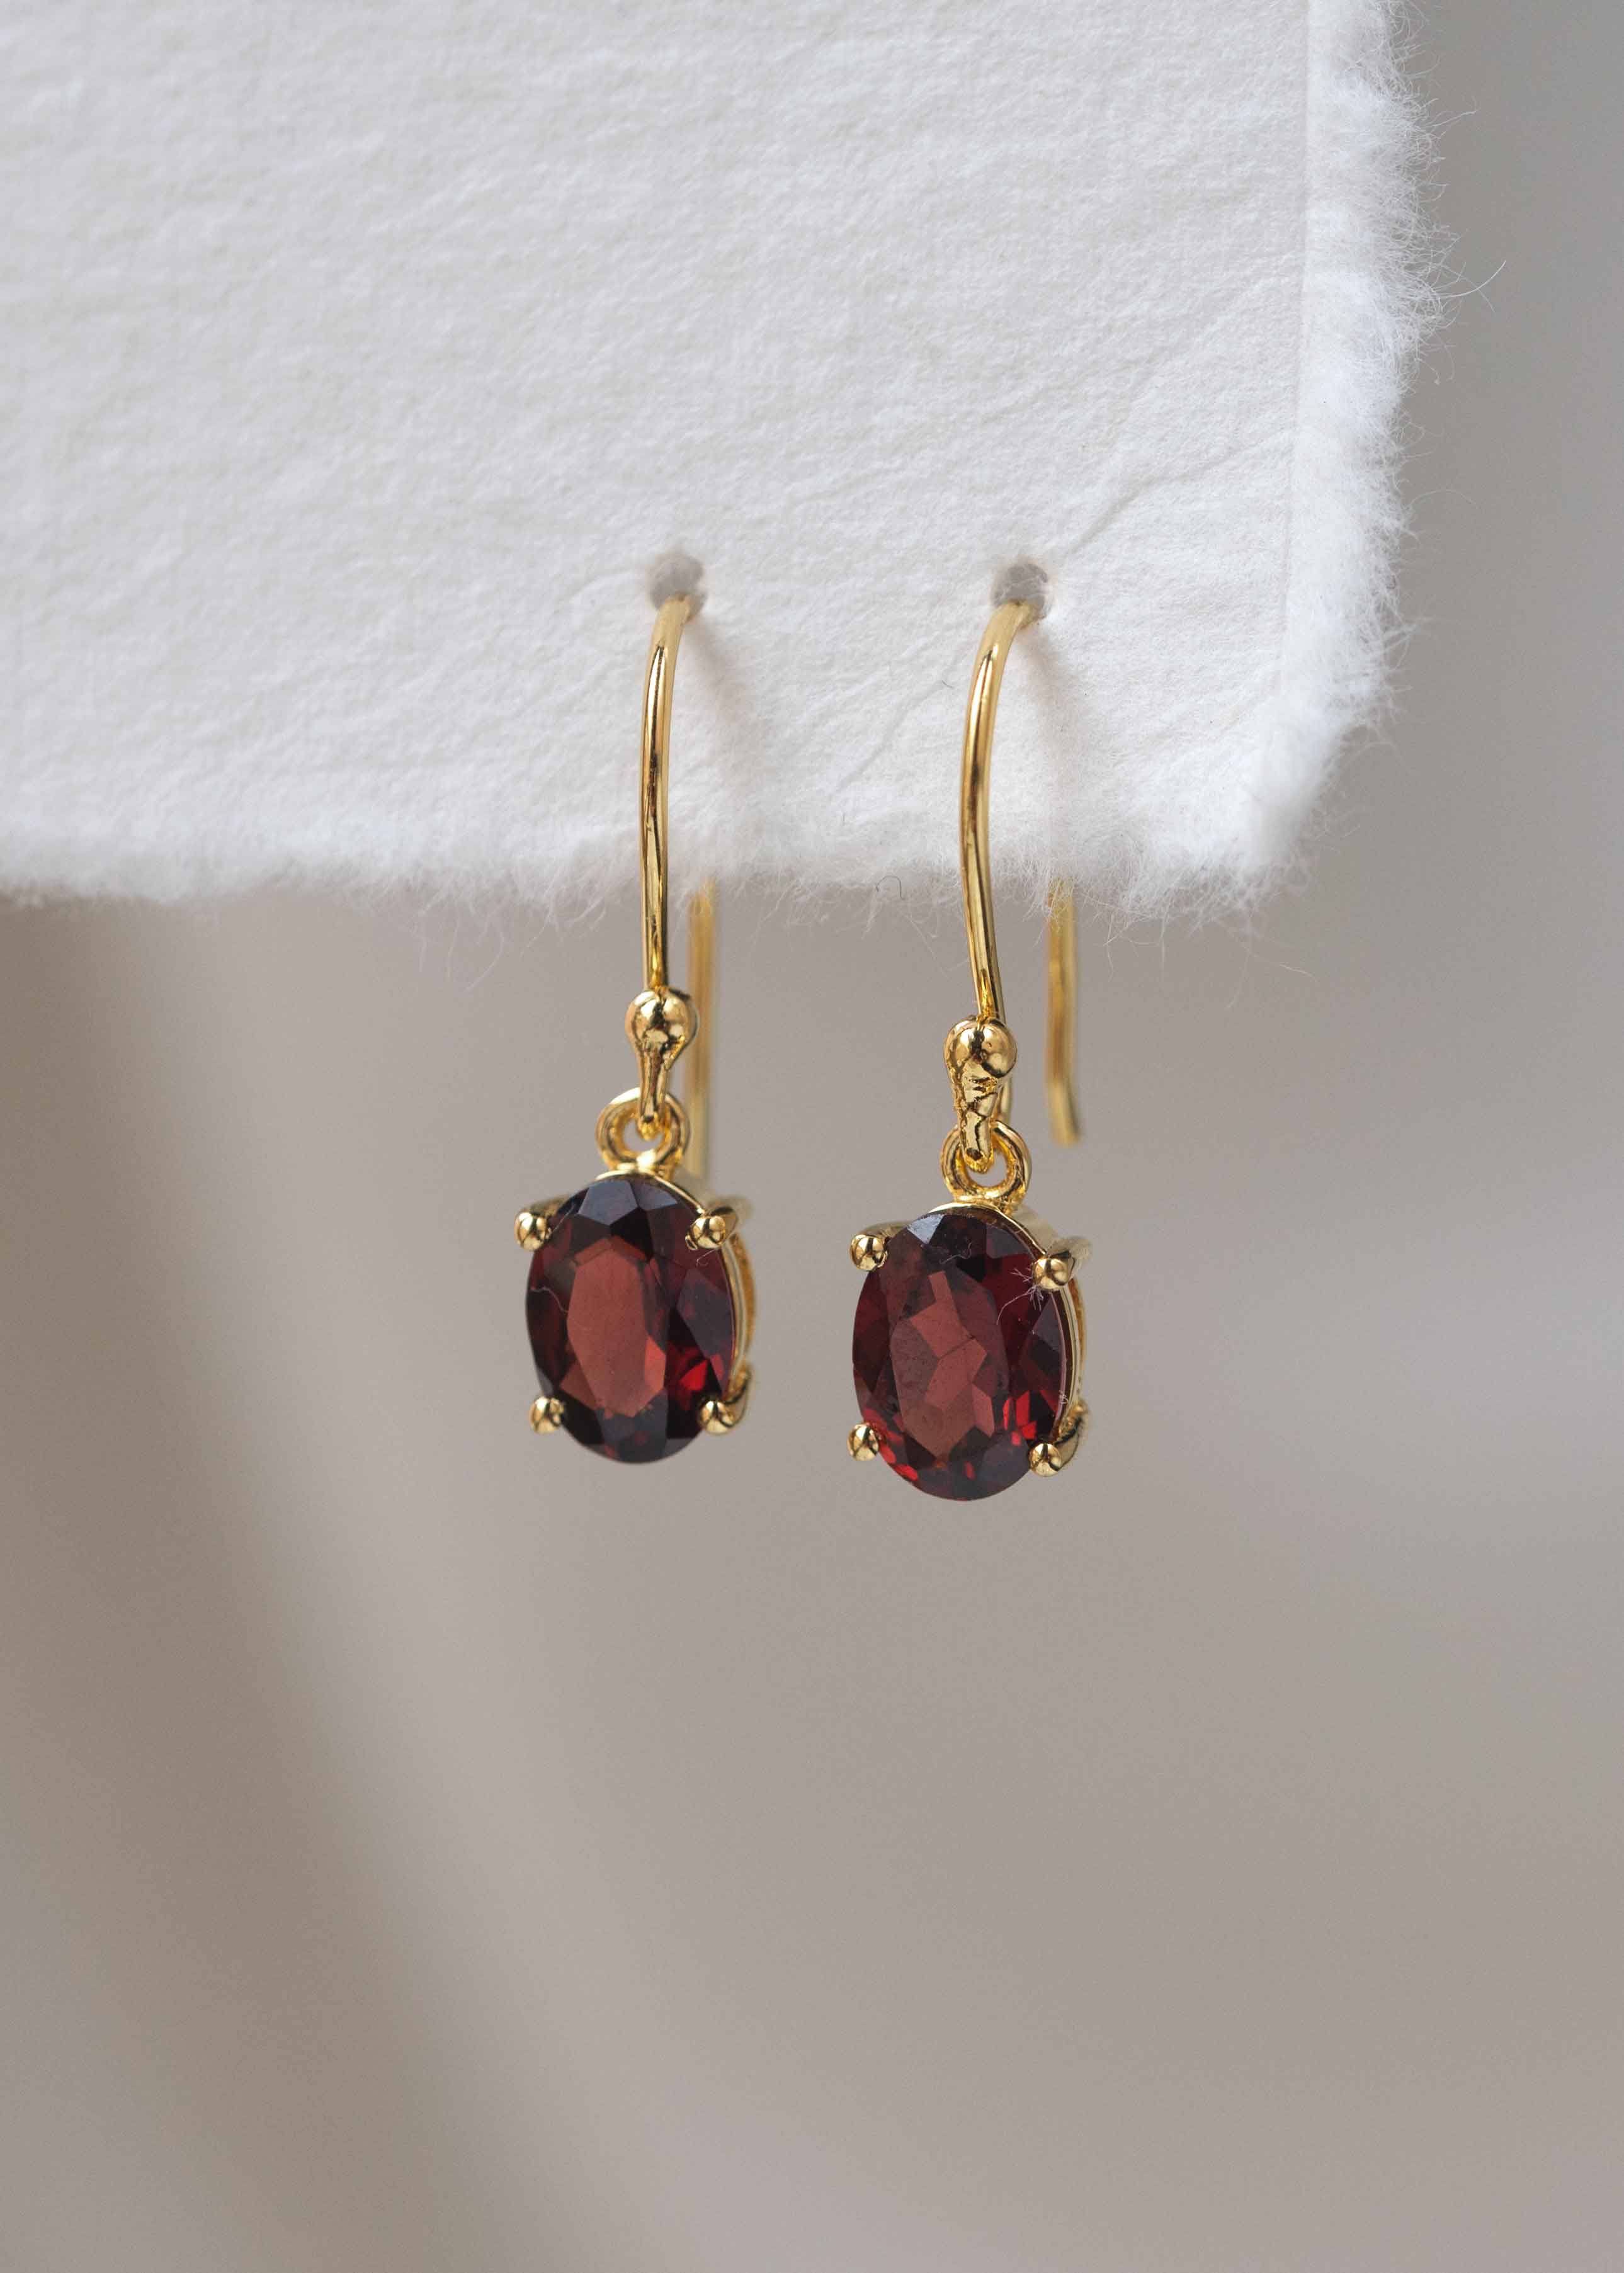 Garnet Gold Dangle Drop Earrings January Birthstone Gifts for Women Girls her girlfriend mom best friend